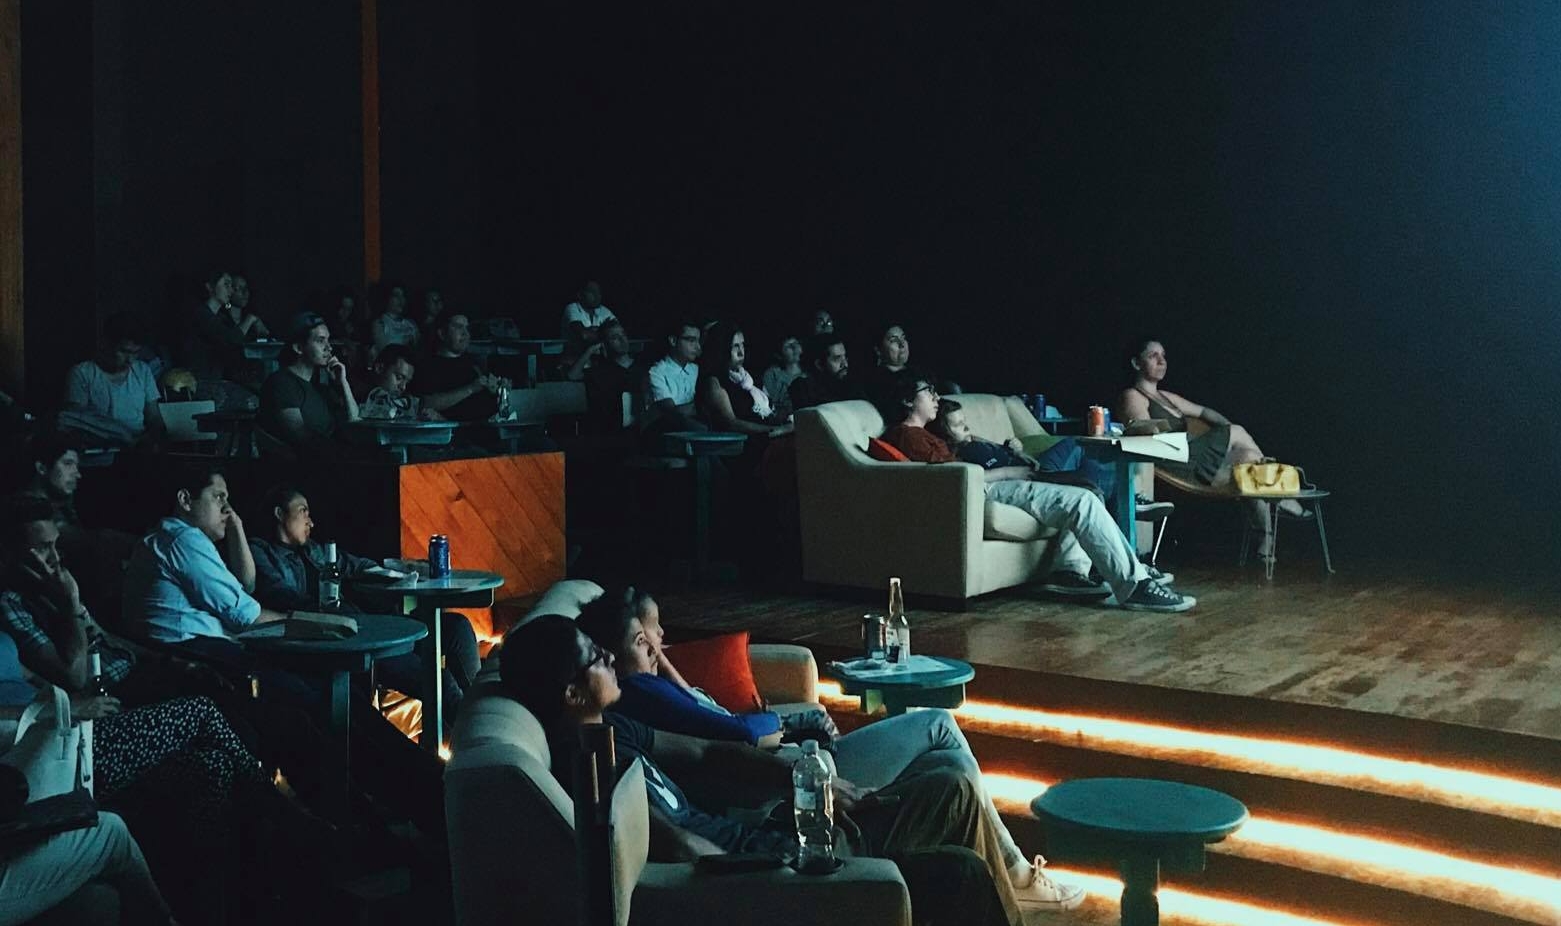 La Sala de Cine se ubicó por casi dos años en el Teatro Nacional (Foto Prensa Libre: La Sala de Cine / Facebook).